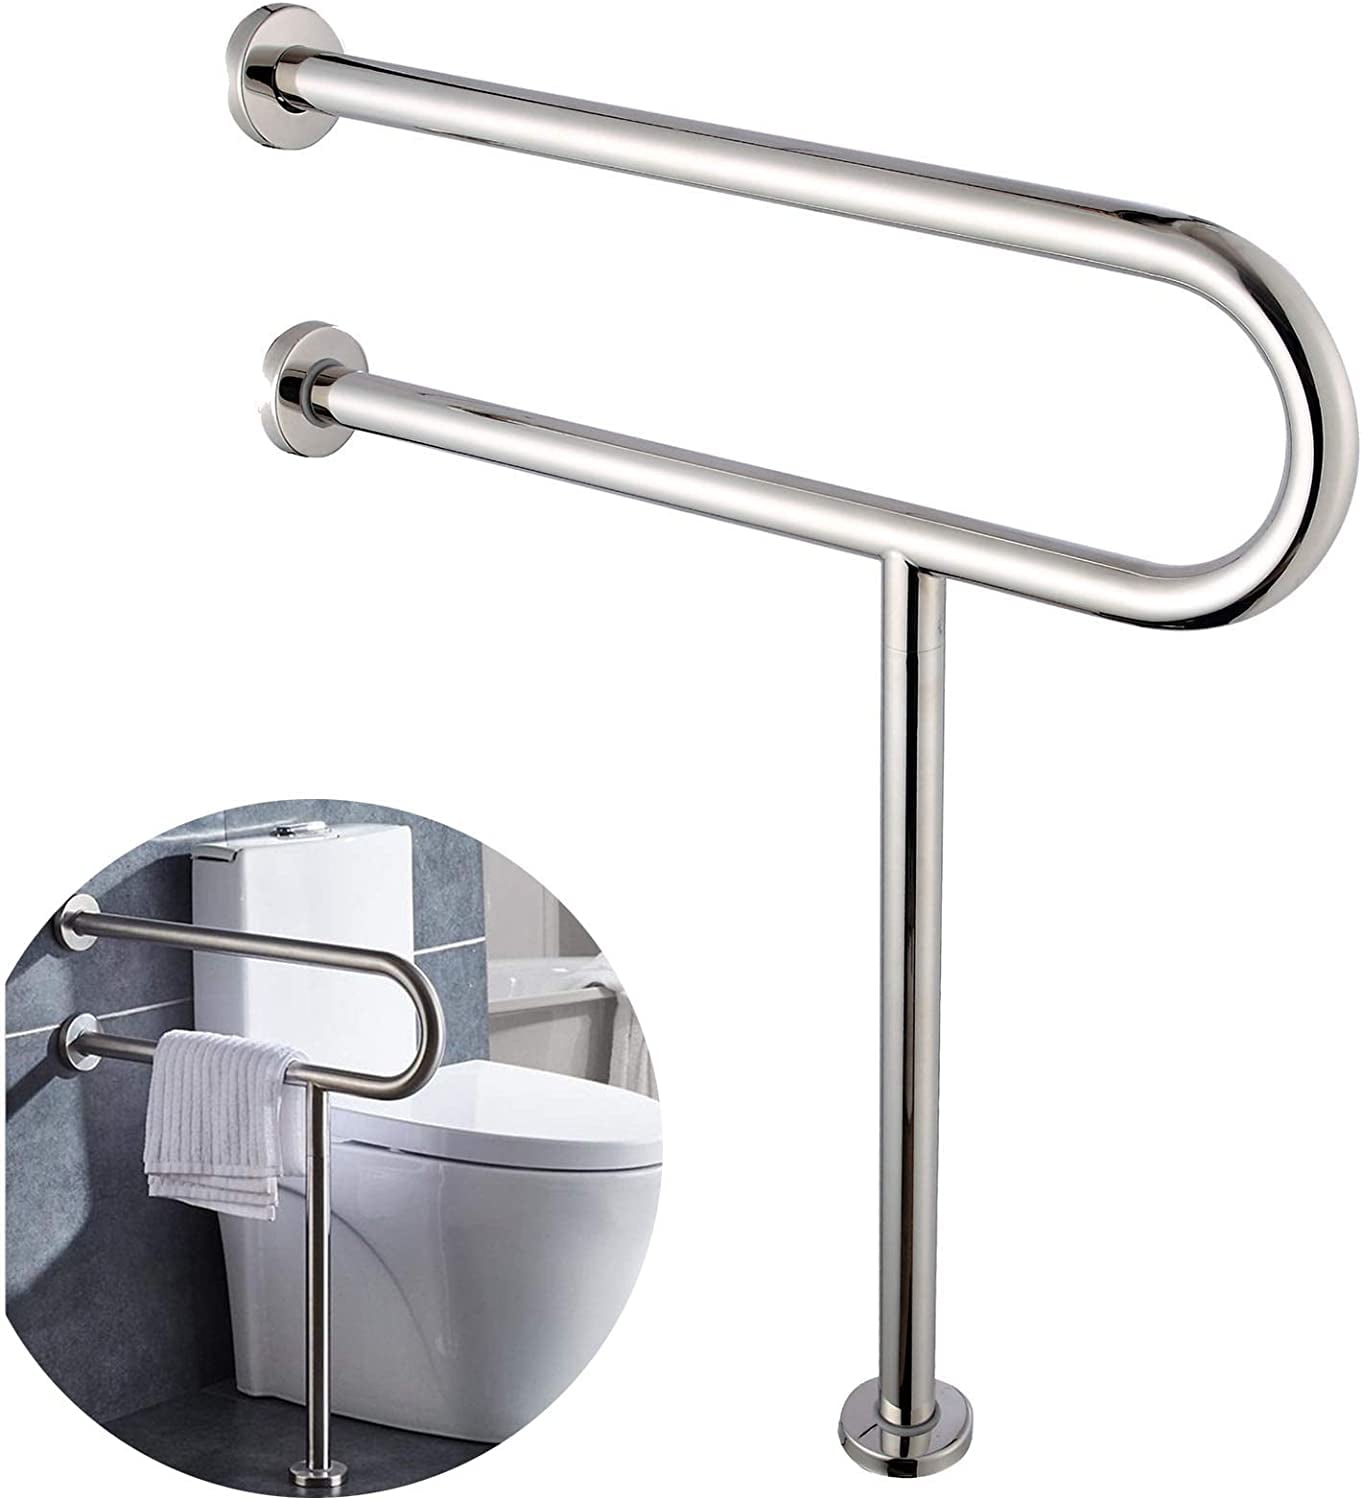 Shower Support Handrail Safety Disabled Elderly Grab Bar Handrail Toilet  Stainless Steel Agarrador Ducha Bathroom Accessories - AliExpress